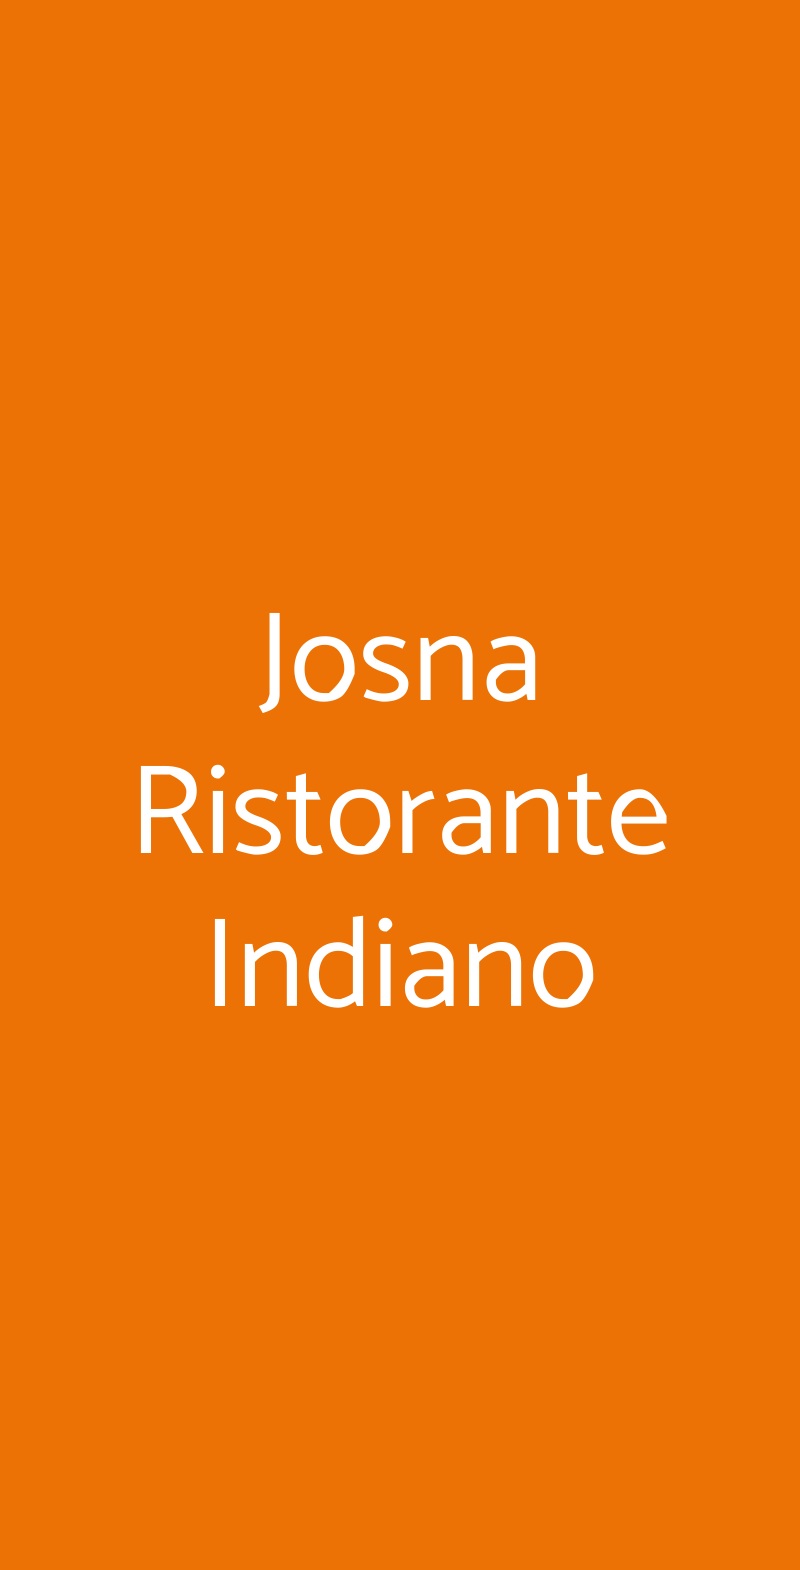 Josna Ristorante Indiano Genova menù 1 pagina